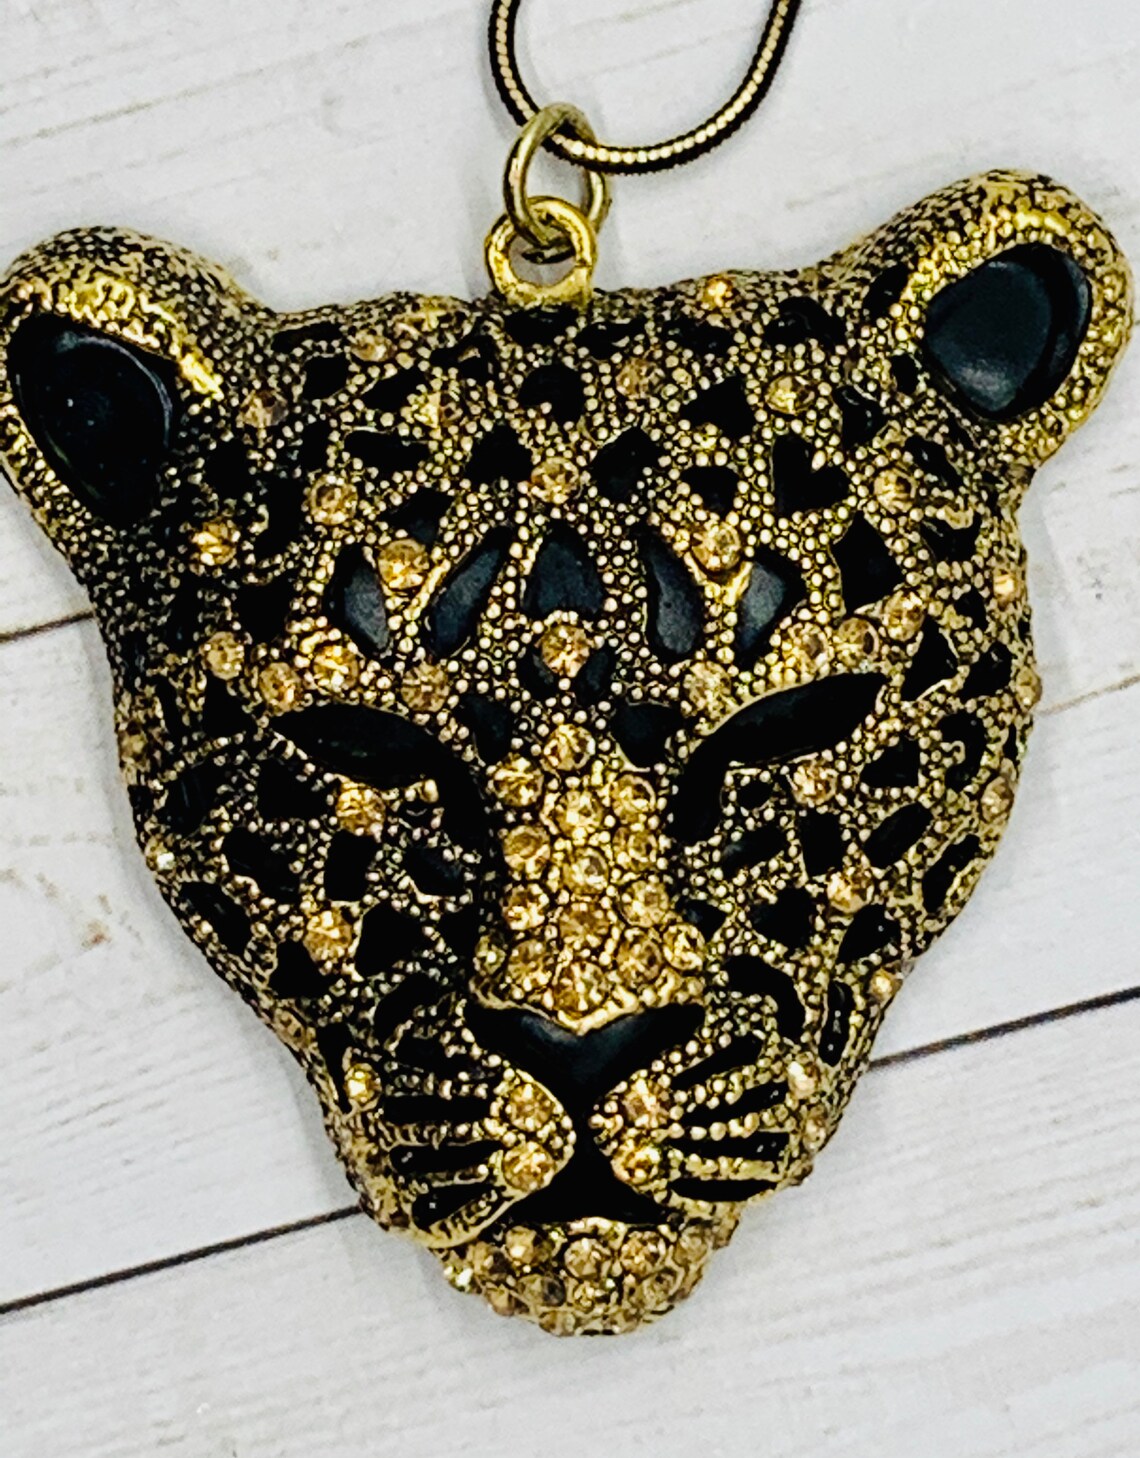 Vintage Rhinestone Cougar necklace | Etsy